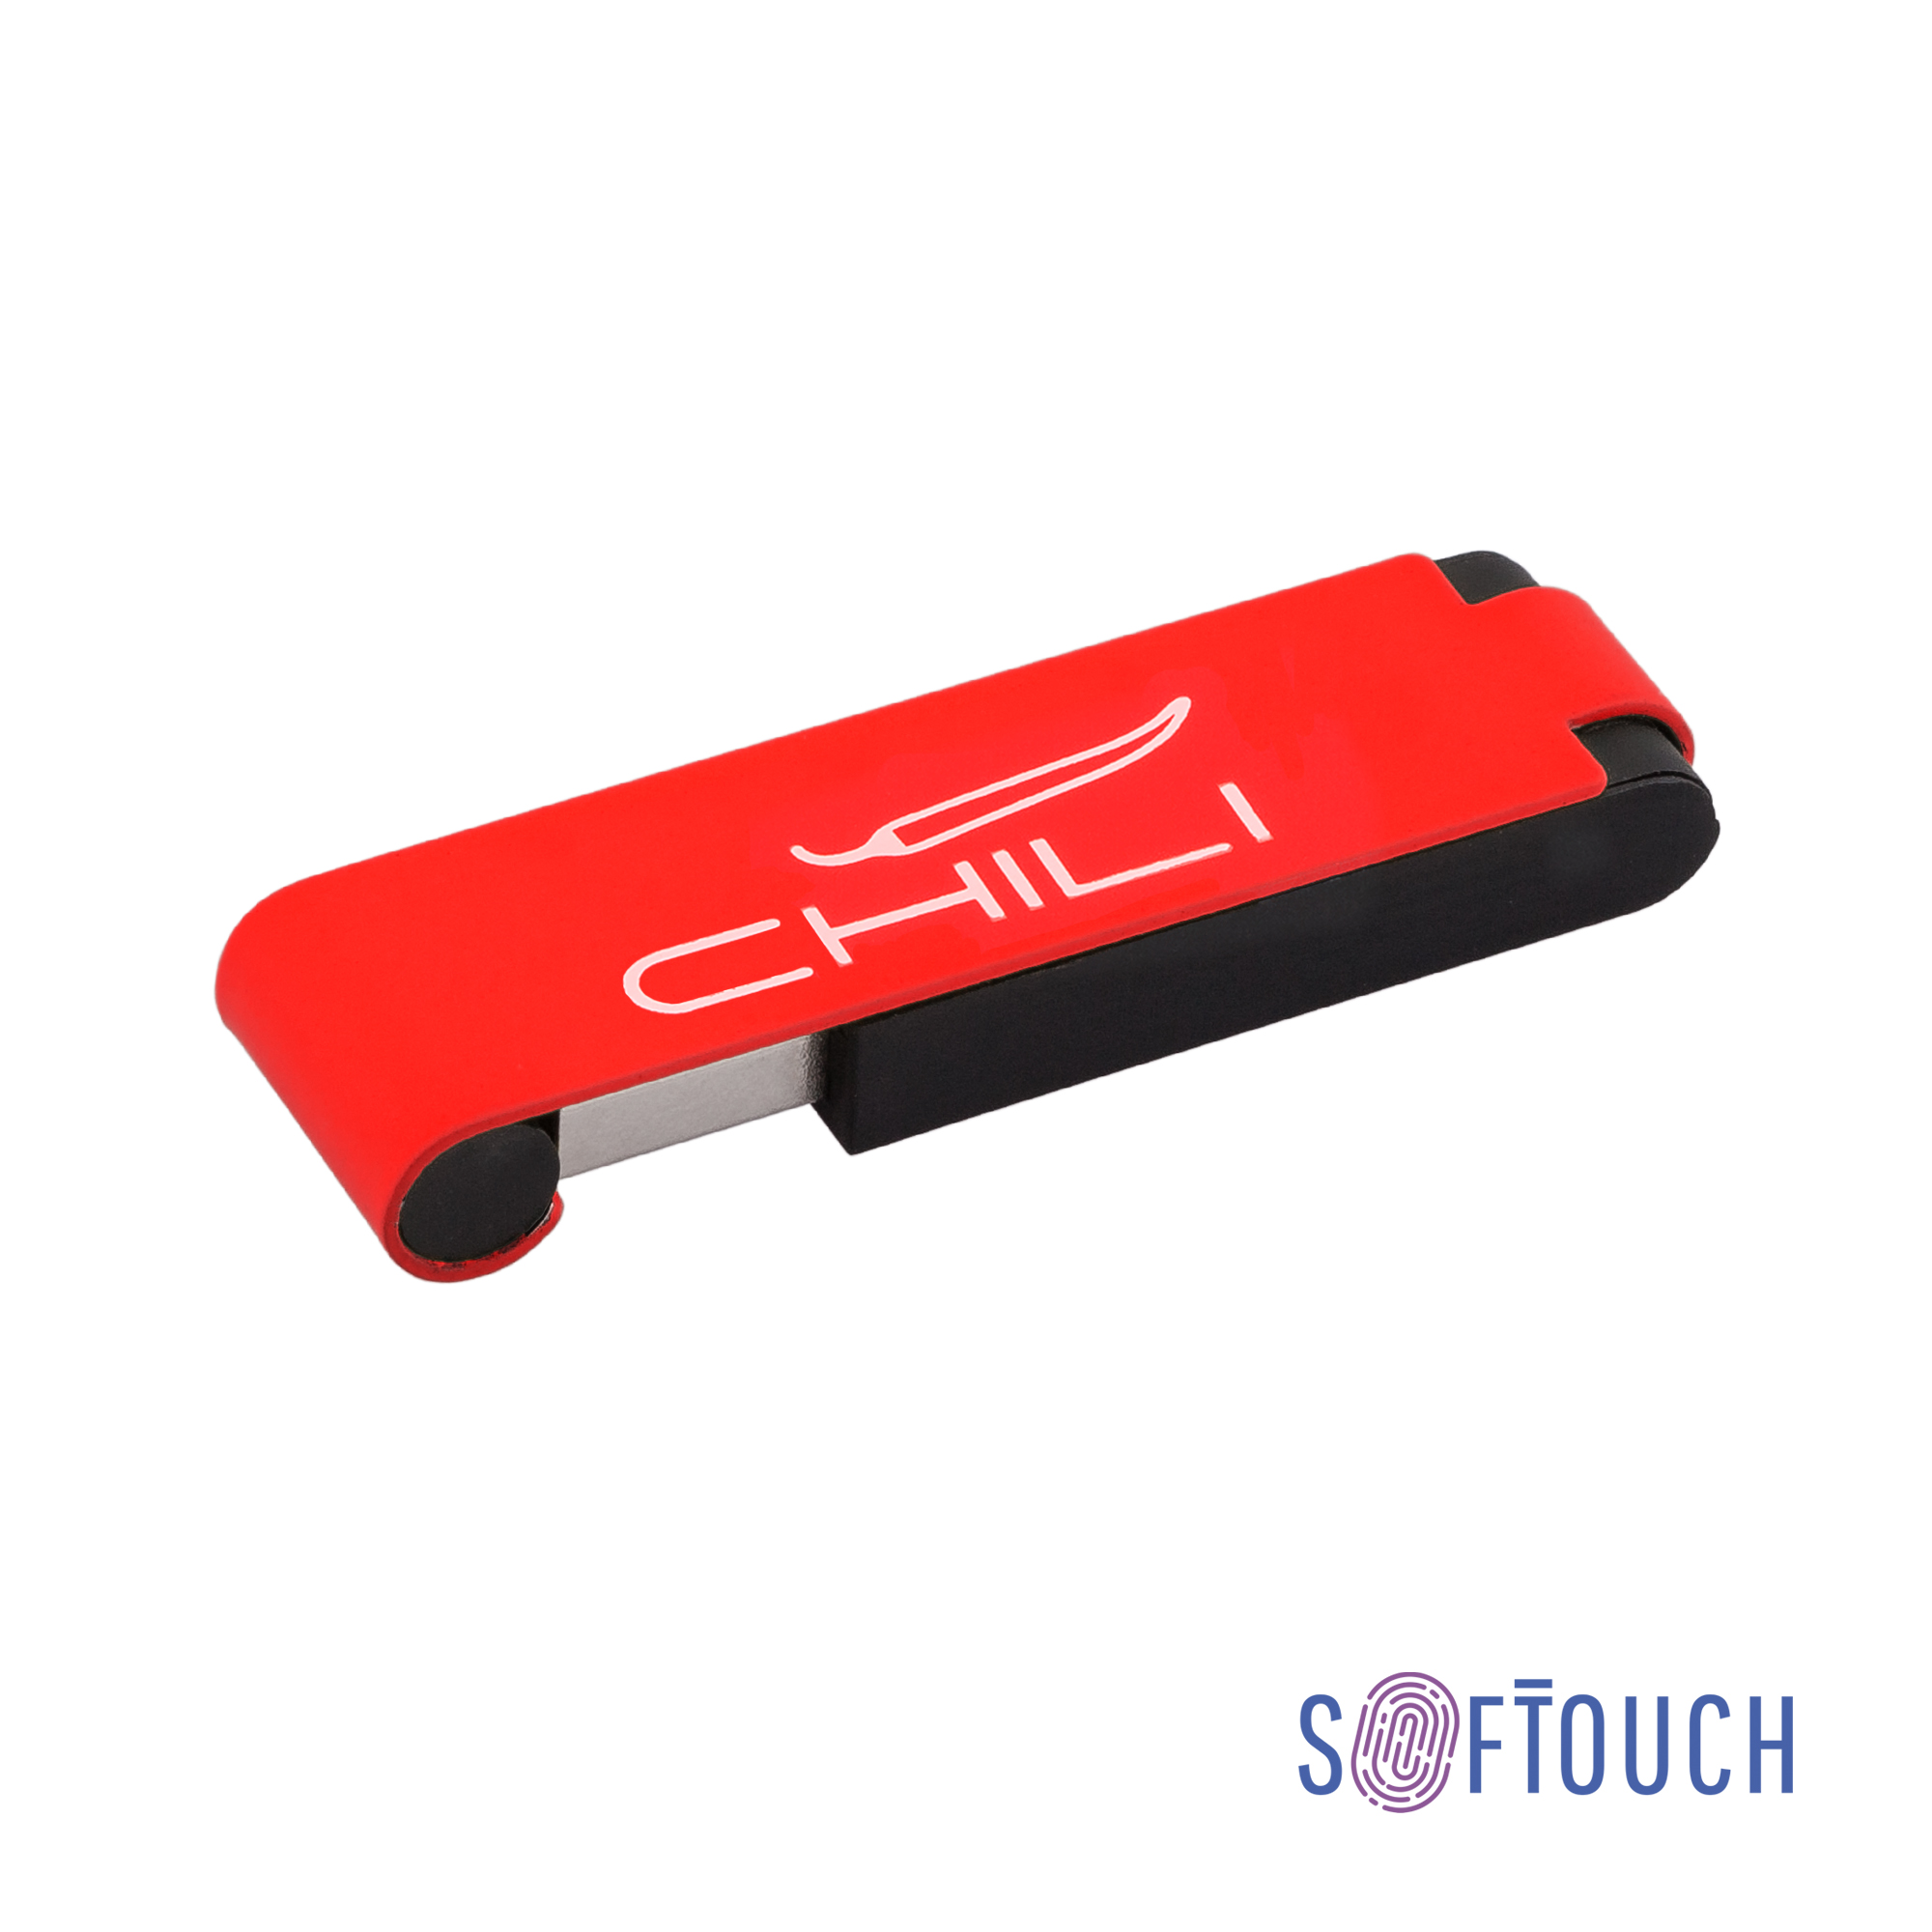 Флеш-карта "Case" 8GB, покрытие soft touch красный с черным